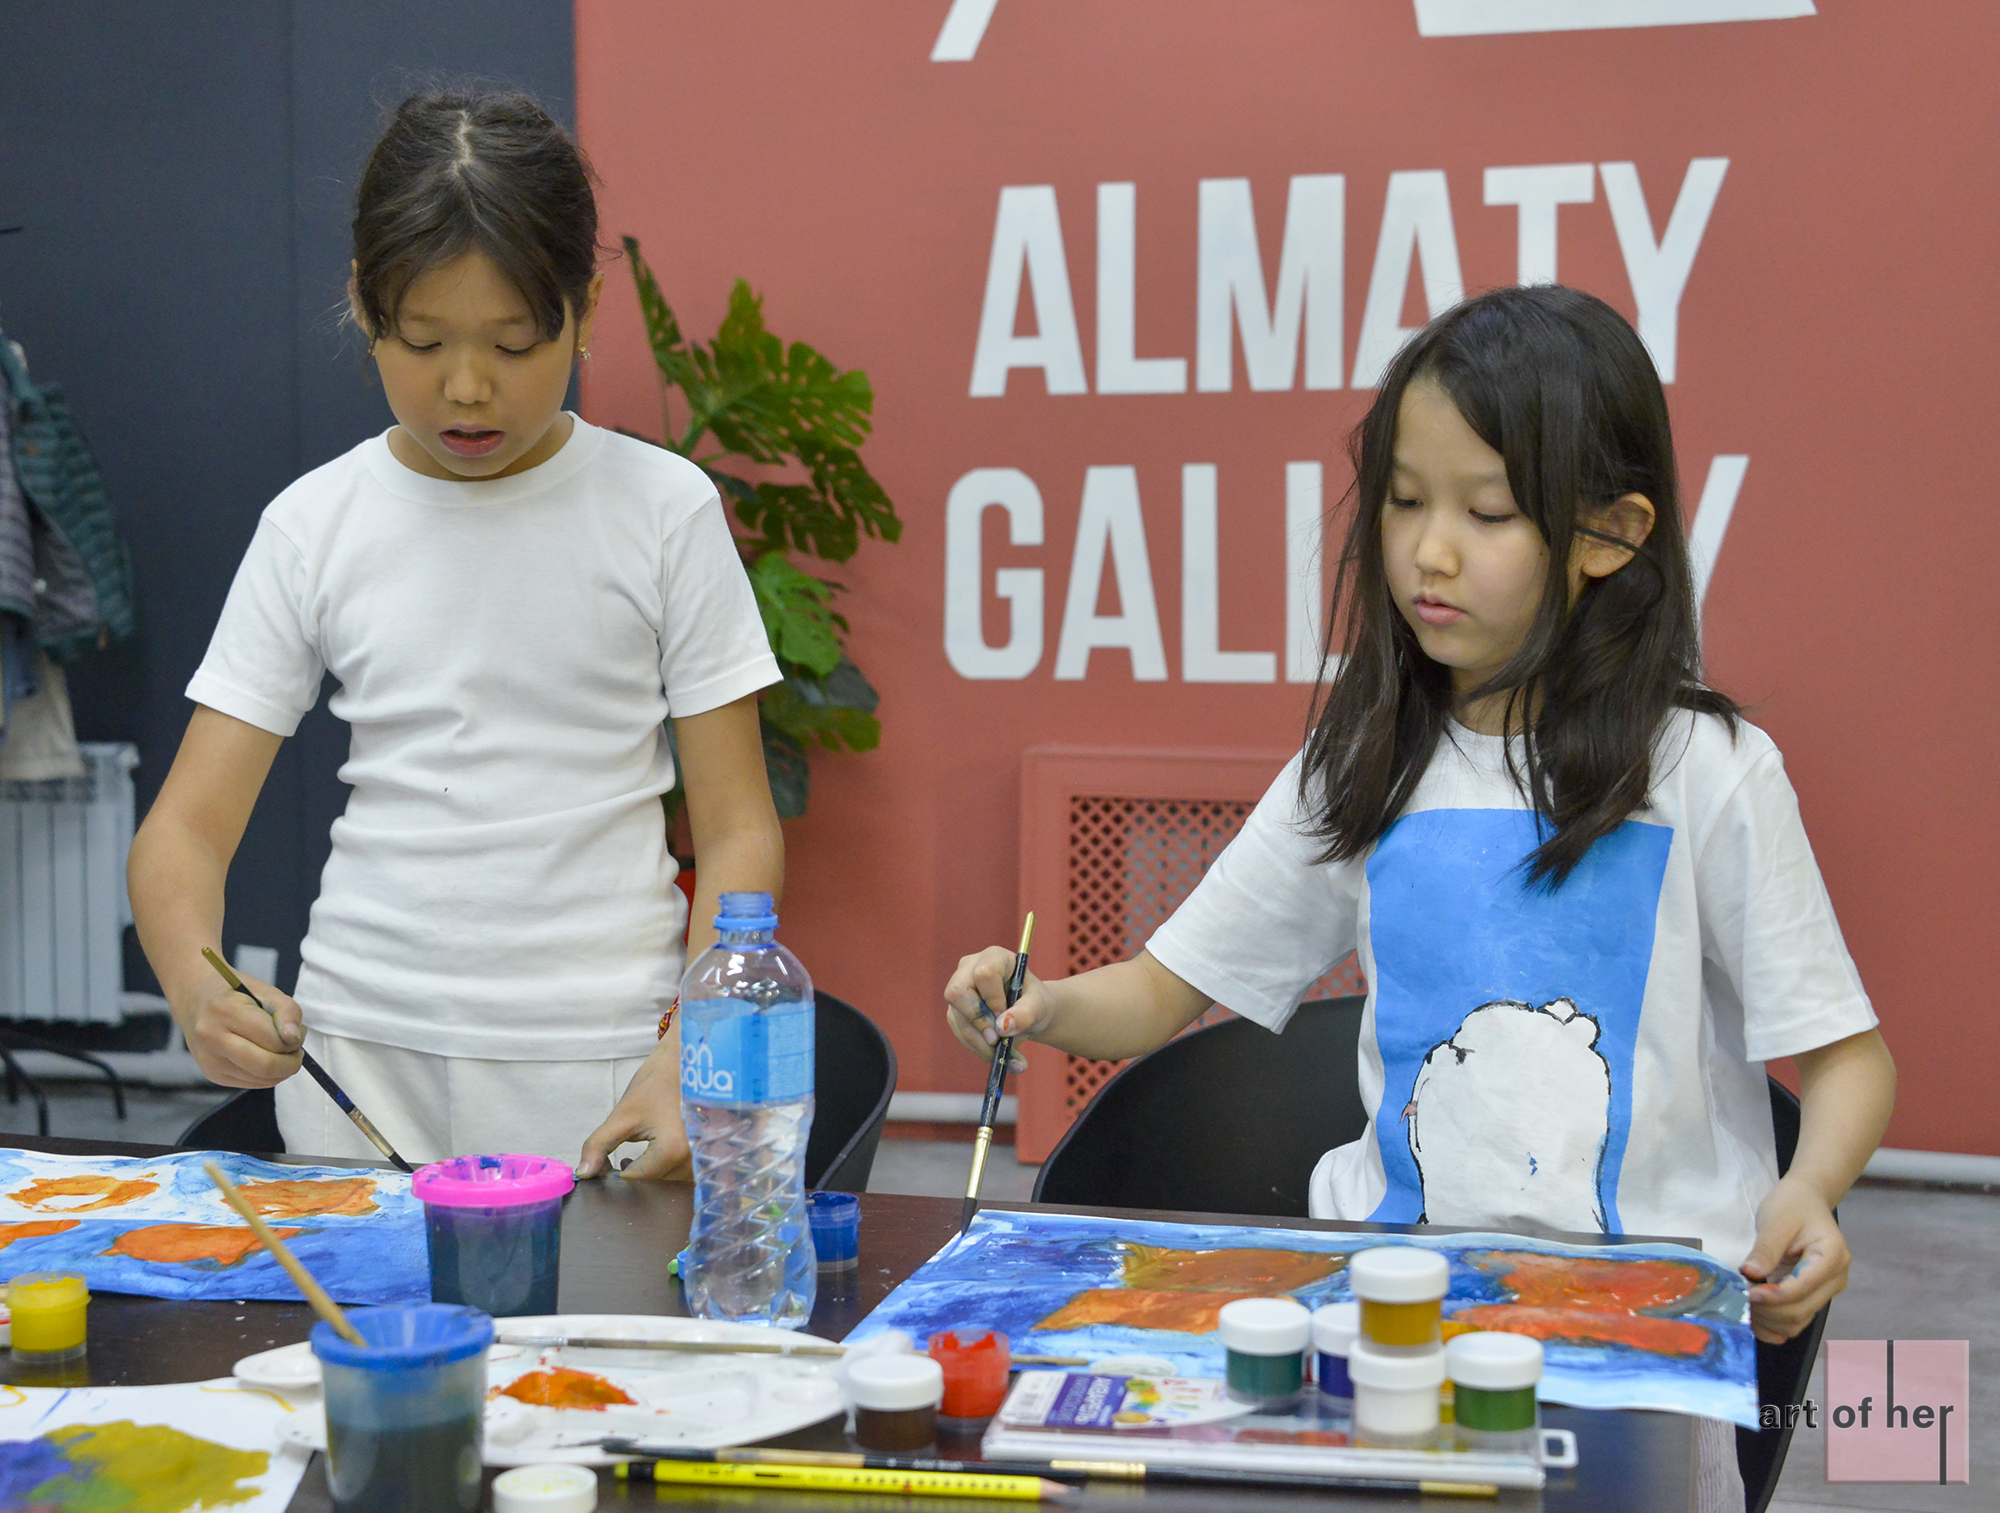 Детский мастер-класс Art of Her & Almaty Gallery